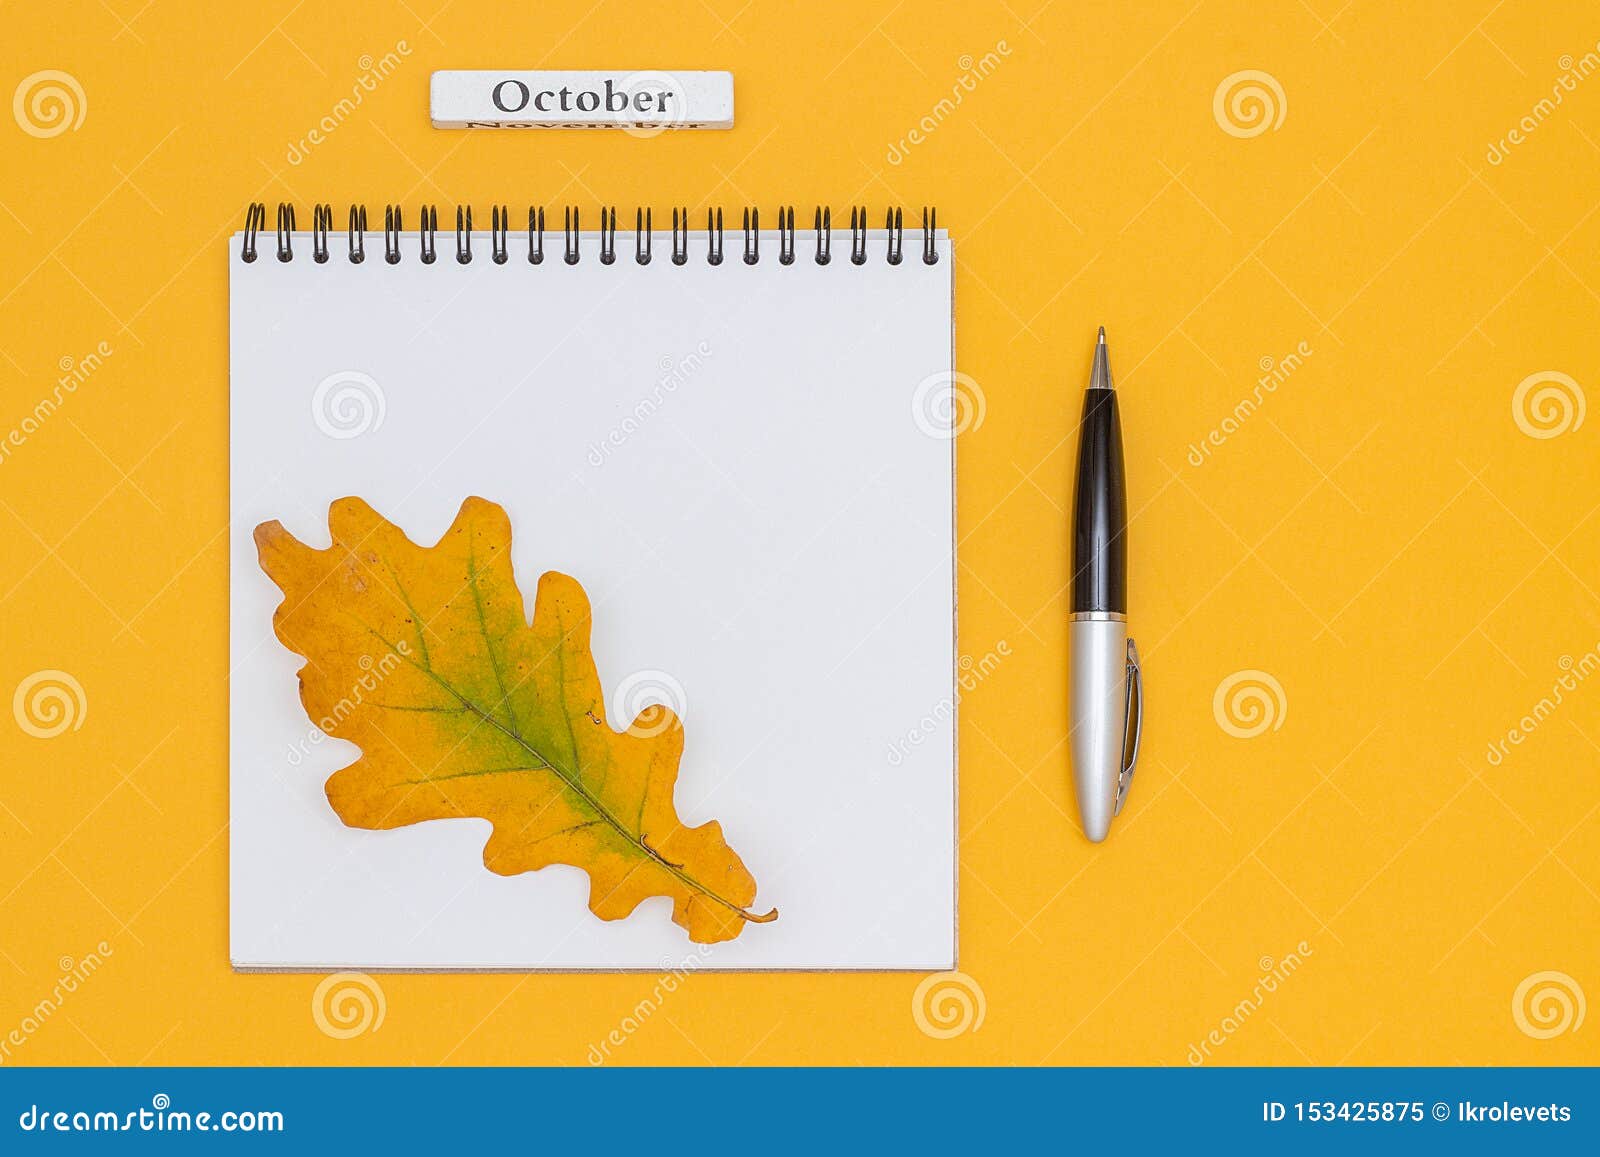 历月10月 与笔的空白的开放笔记薄和在黄色背景的秋叶大模型顶视图平的被放置的模板为库存图片 图片